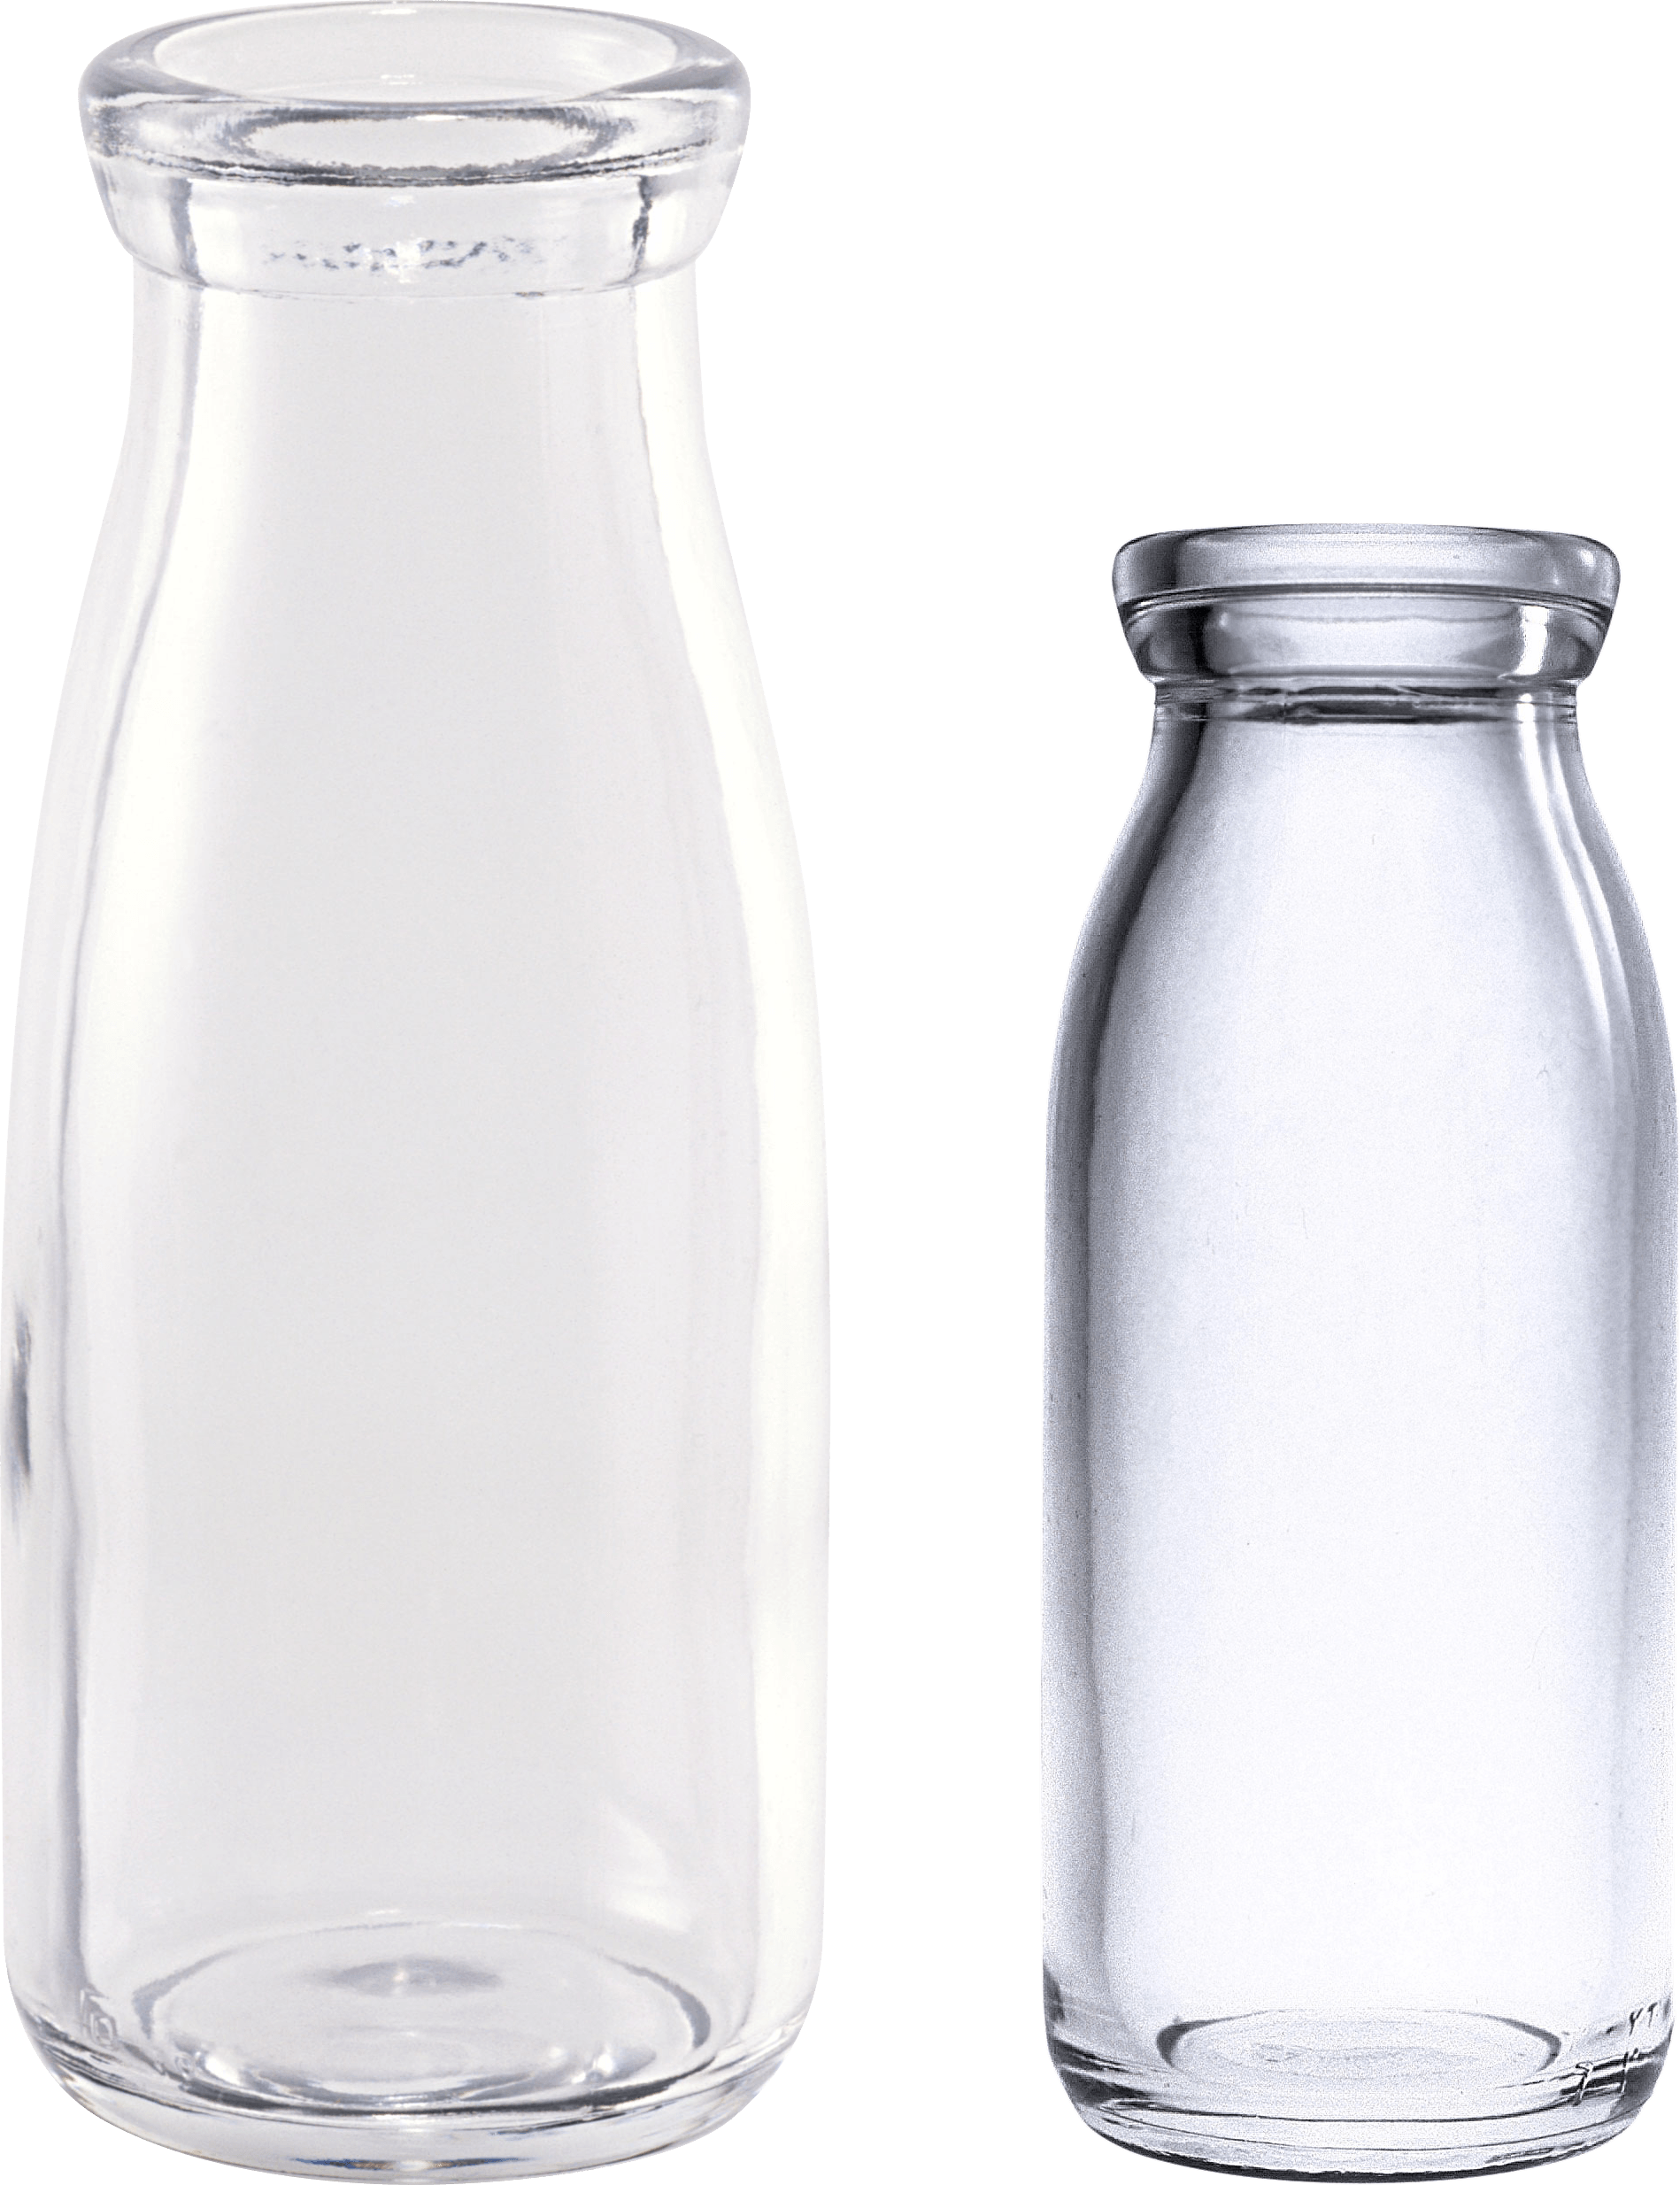 Glass Jar Bottle Translucent Free HQ Image PNG Image